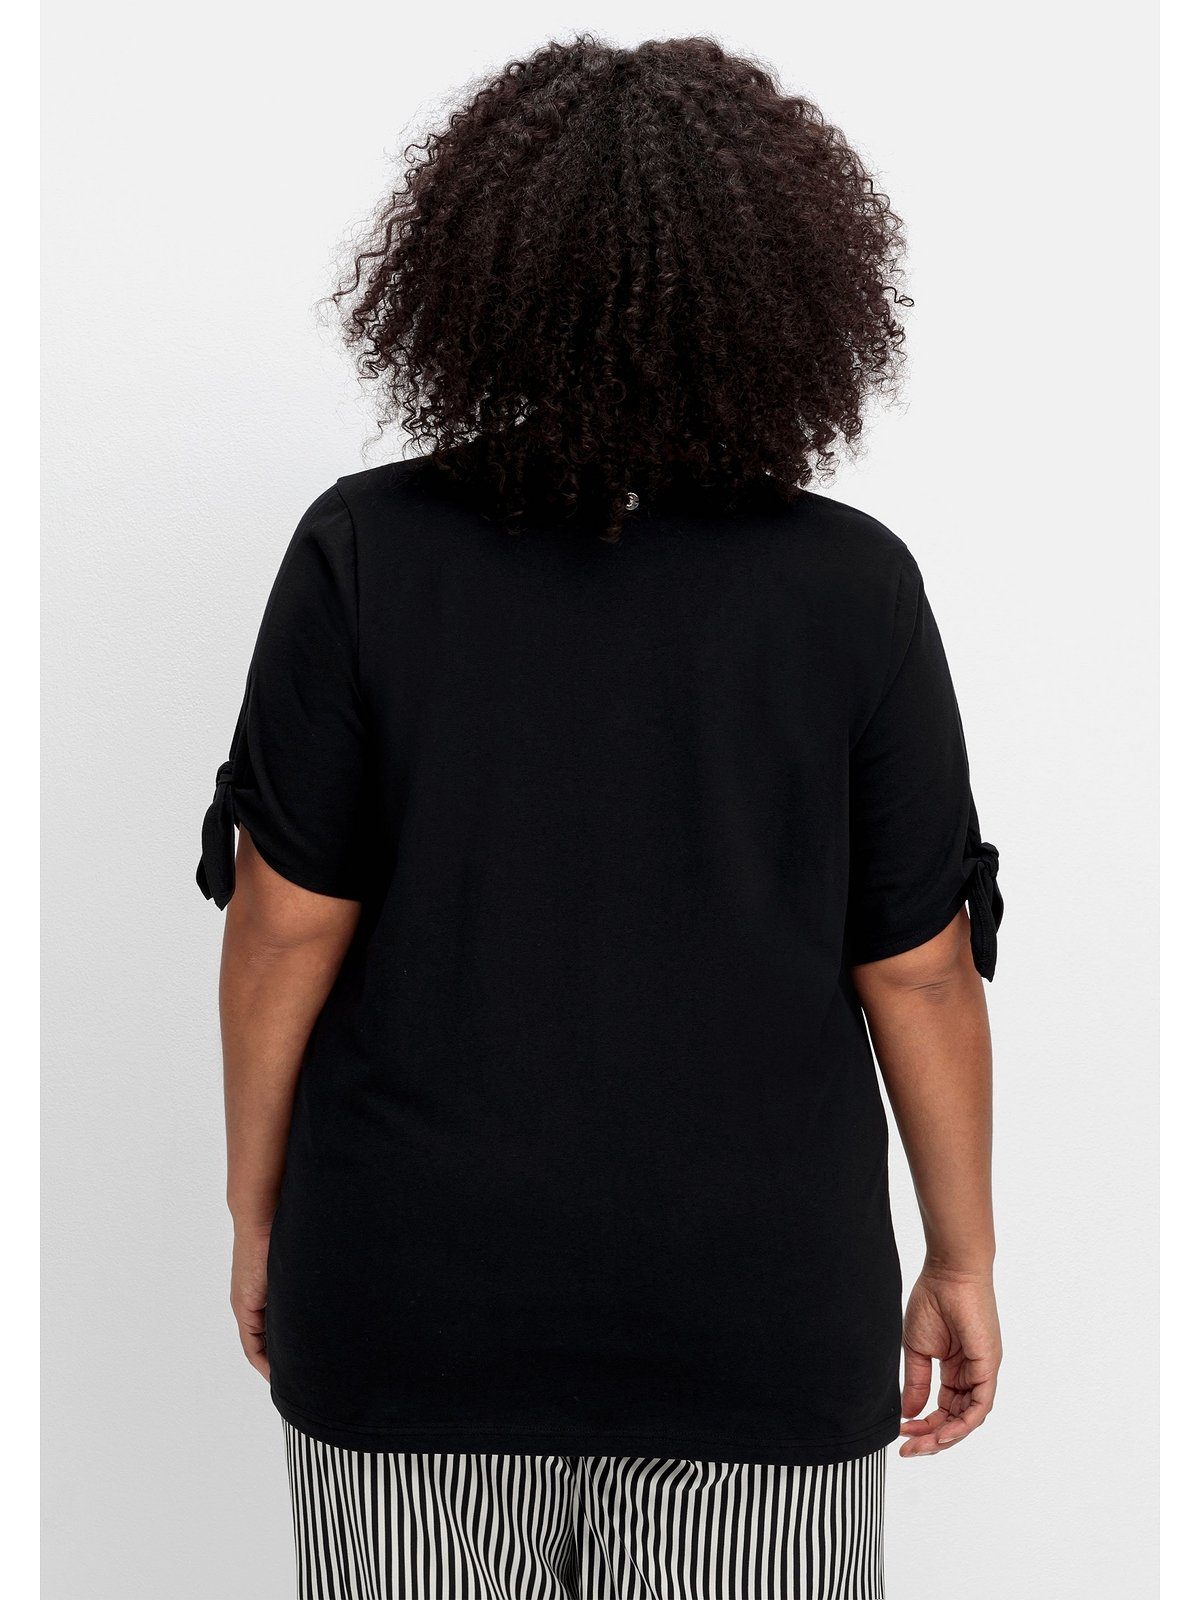 T-Shirt schwarz Knotendetail Ärmelsaum mit Größen am Sheego Große